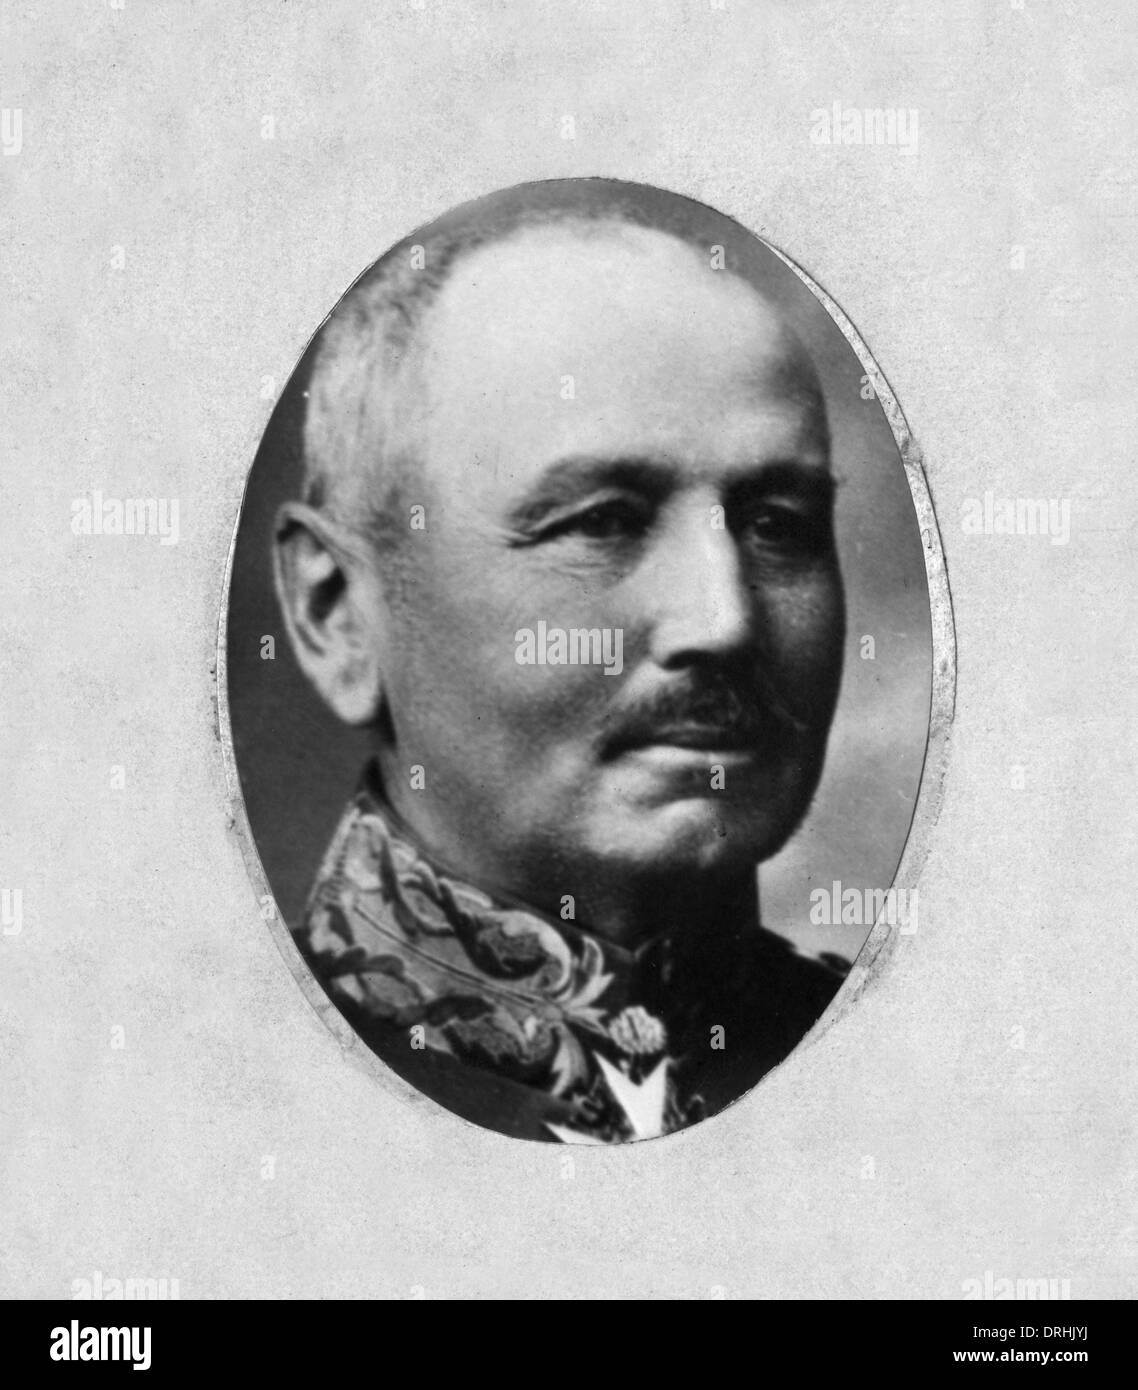 Alexander von Kluck, German army officer, WW1 Stock Photo